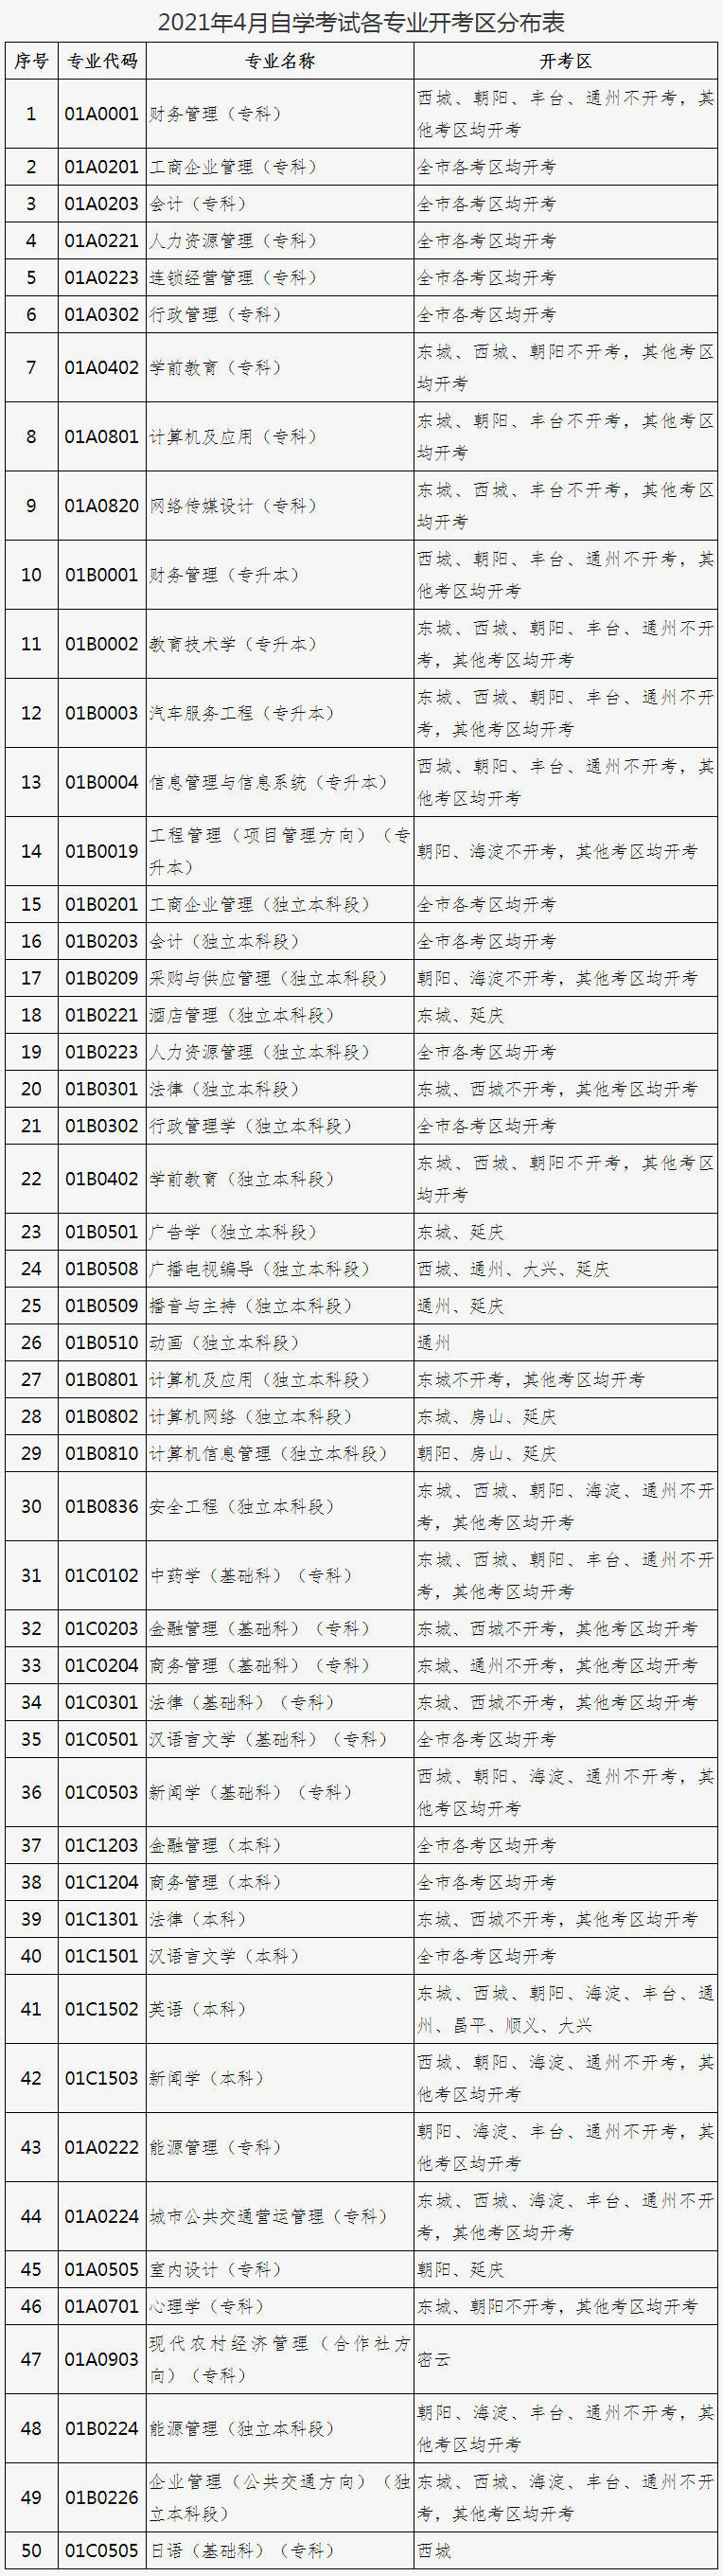 2021年四月北京自学考试笔试课程新生注册考试报名工作安排的通知